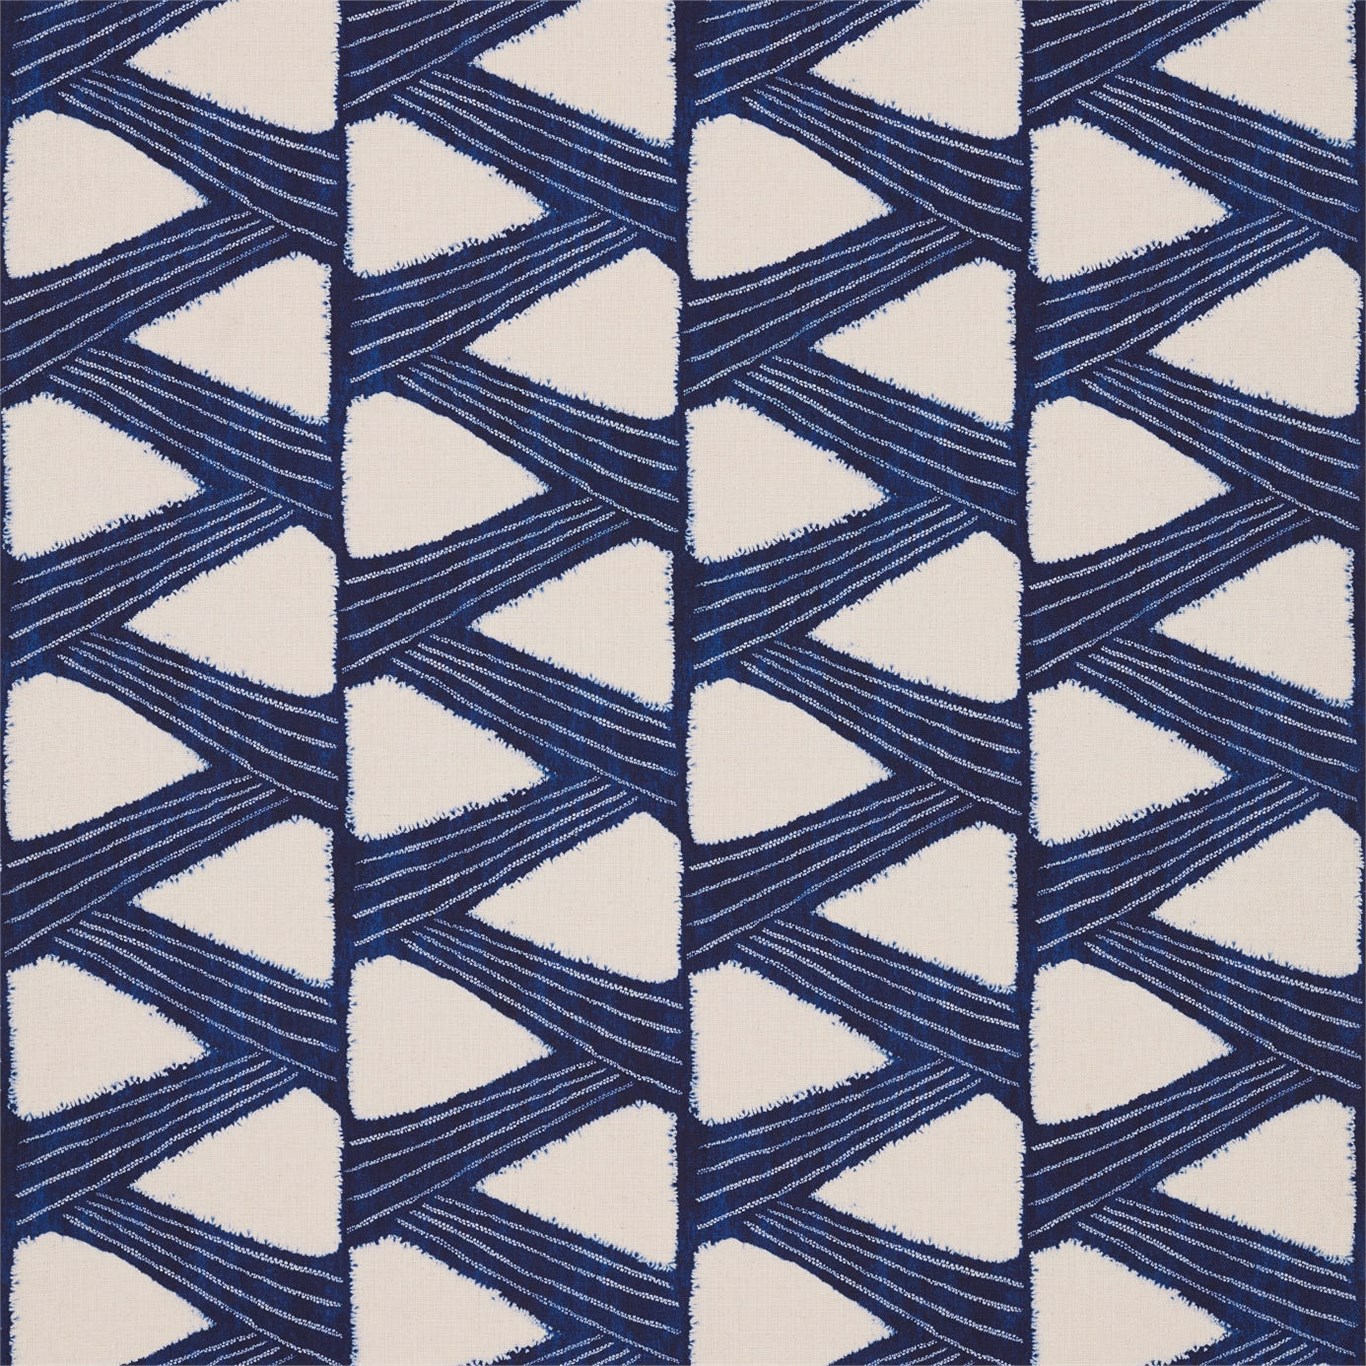 Kanoko Indigo Fabric by ZOF